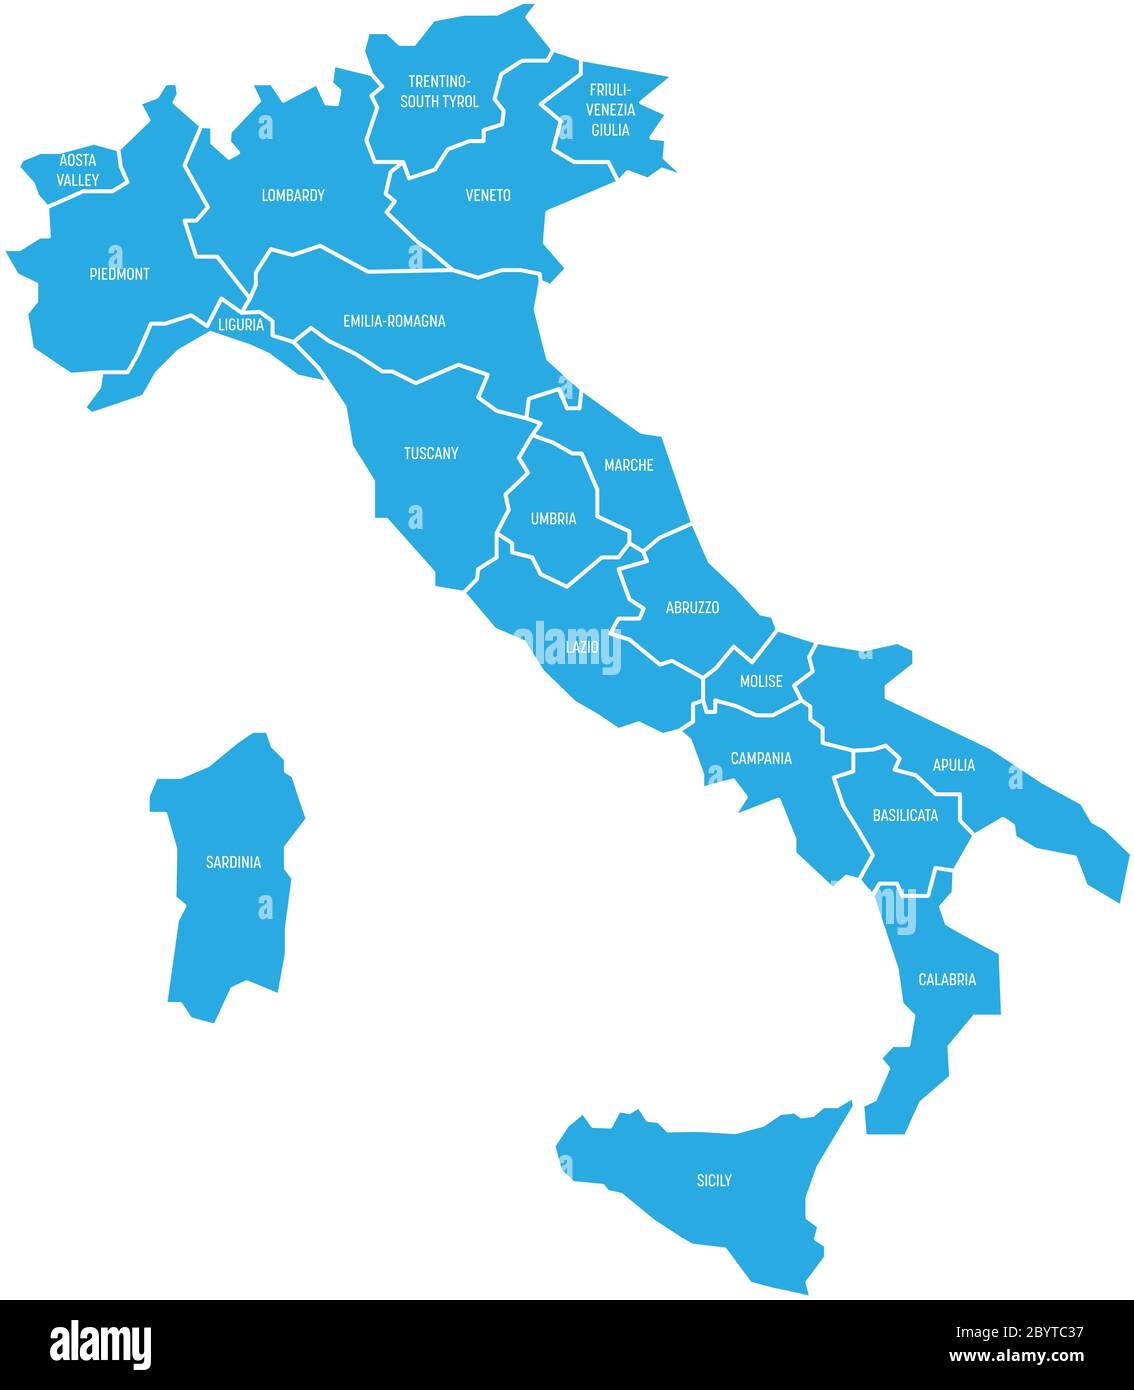 Mappa dell'Italia divisa in 20 regioni amministrative. Terra blu, bordi bianchi ed etichette bianche. Semplice illustrazione vettoriale piatta. Illustrazione Vettoriale